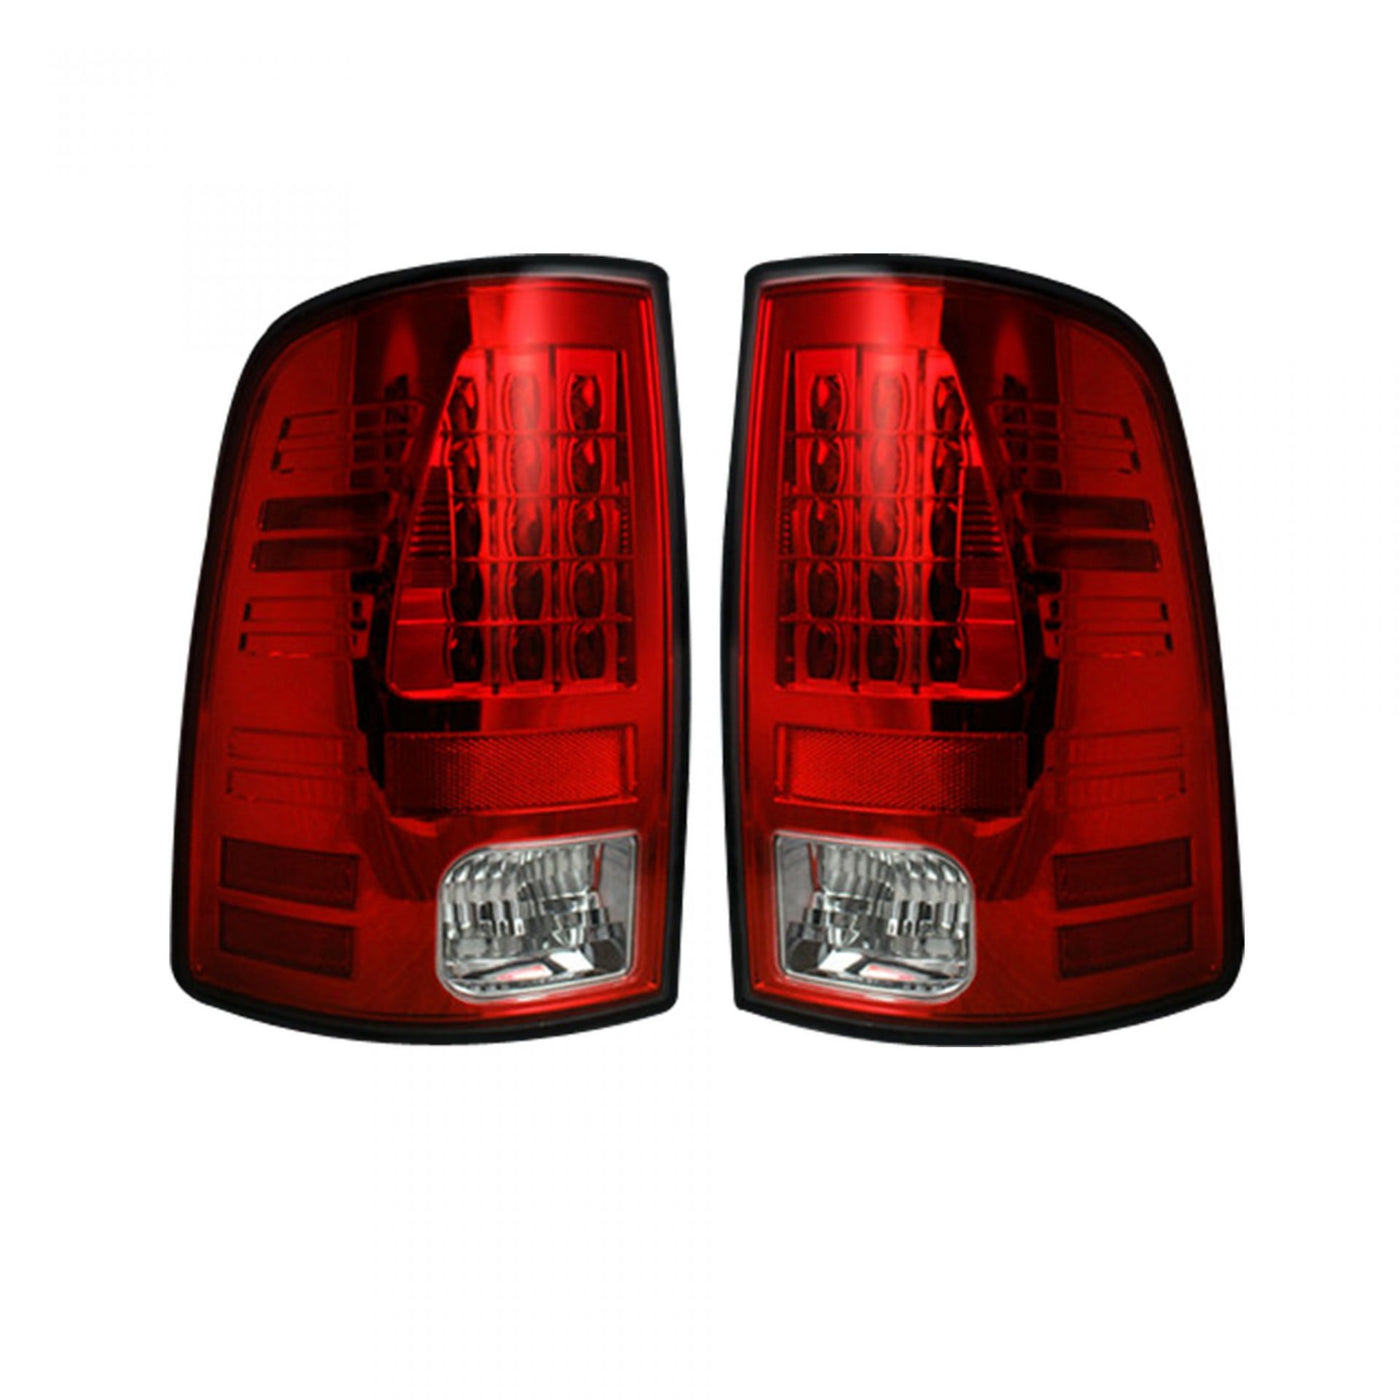 Dodge Tail Lights, Dodge RAM Tail Lights, RAM 1500 09-18 Tail Lights, RAM 2500 10-18 Tail Lights, RAM 3500 10-18 Tail Lights, Red Tail Lights, Recon Tail Lights